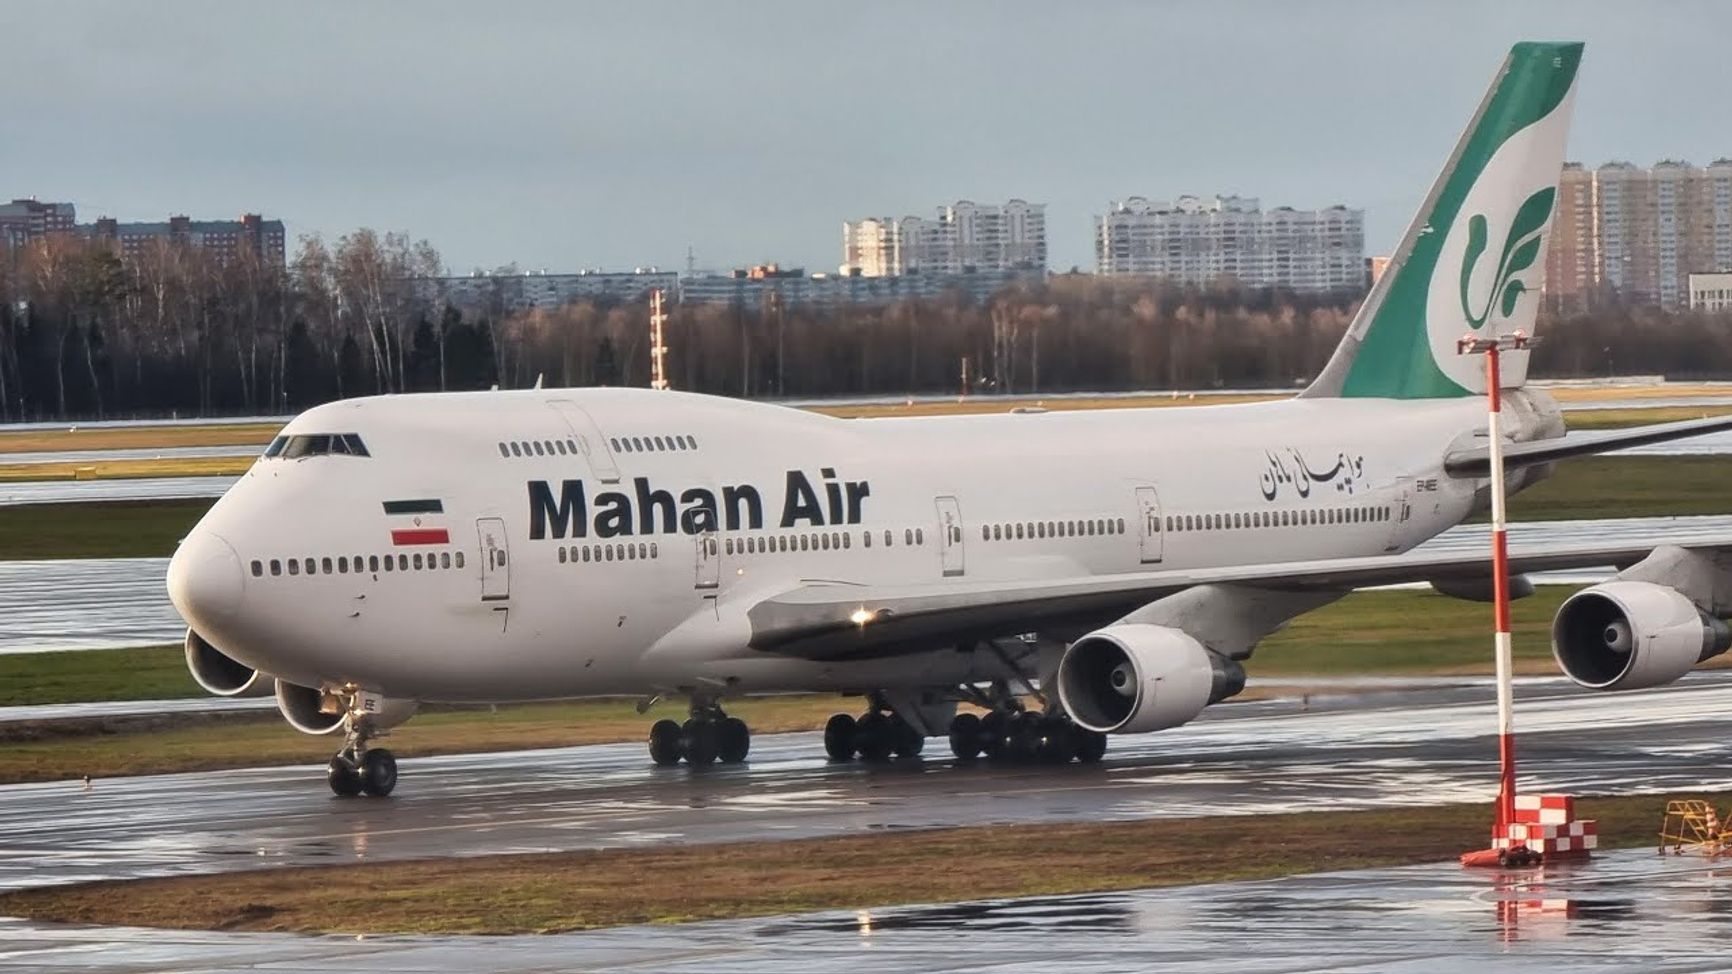 Боинг-747-400 авиакомпании Mahan Air, осуществляющий рейсы по маршруту Москва — Тегеран